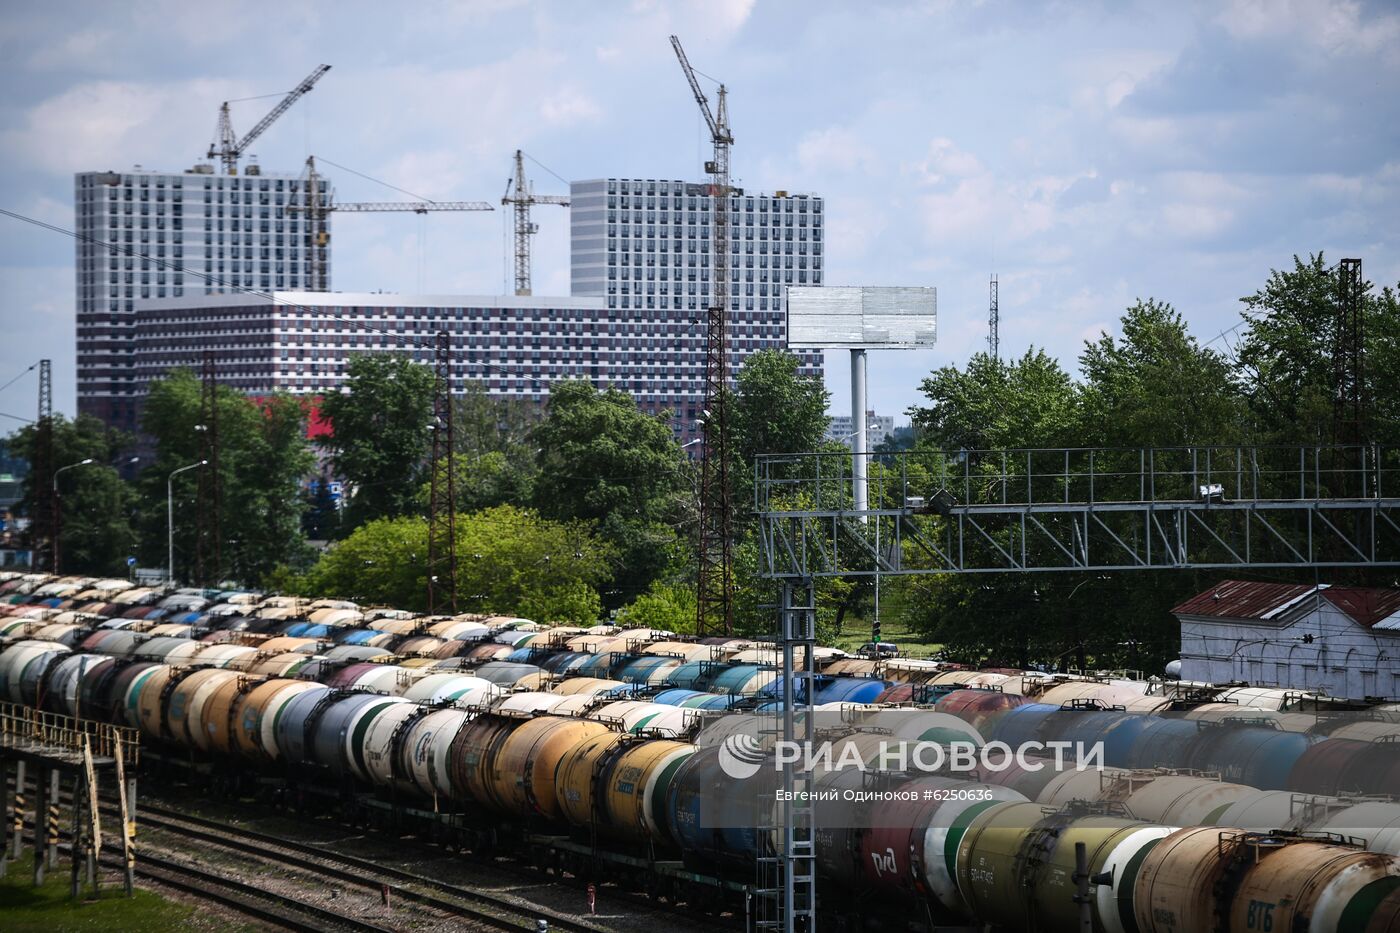 Товарные составы на железнодорожной станции "Яничкино"